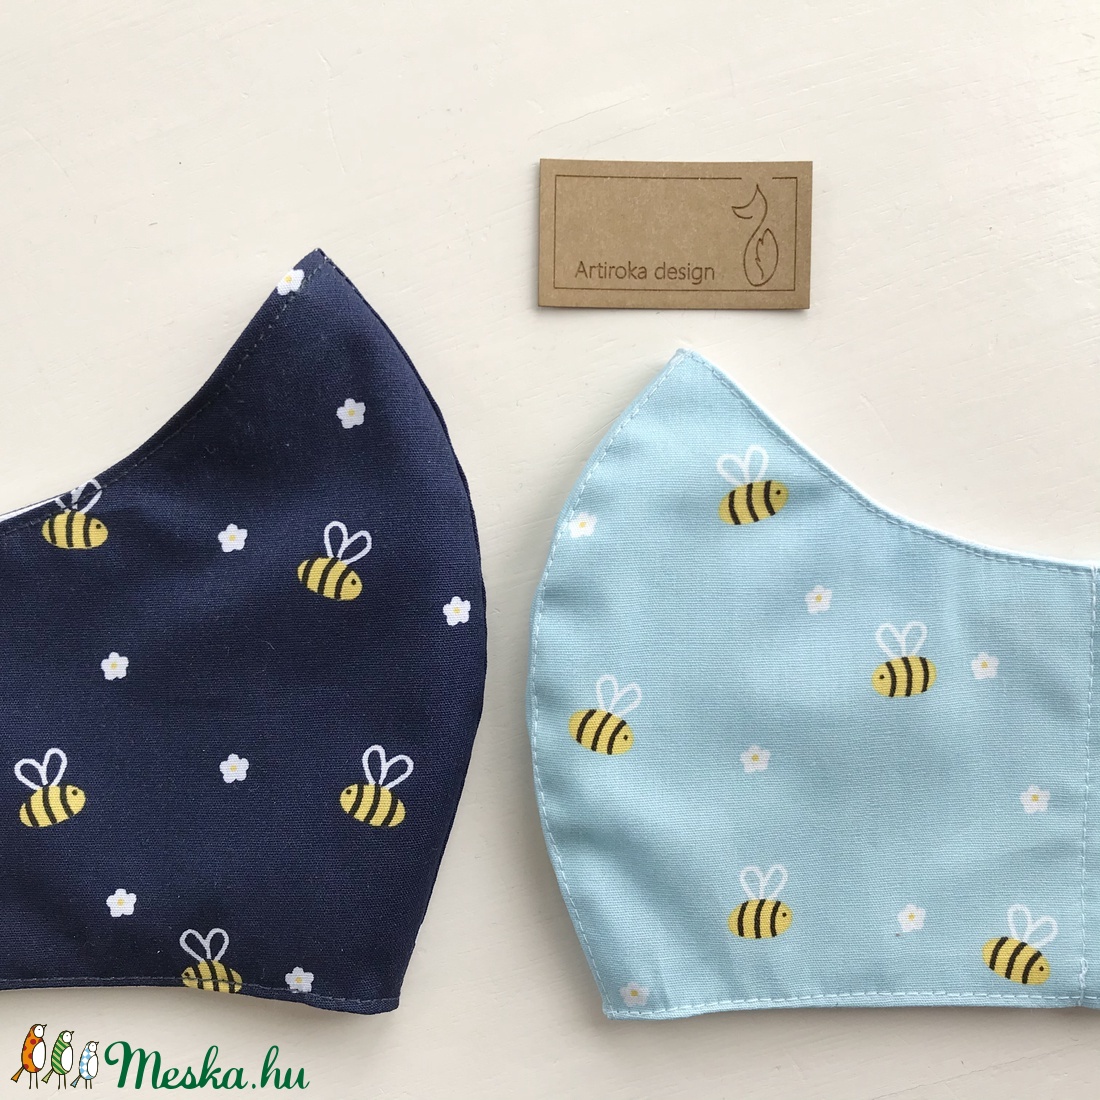 Méhecske és virág mintás kék színű prémium maszk, arcmaszk - Artiroka design - maszk, arcmaszk - férfi & uniszex - Meska.hu